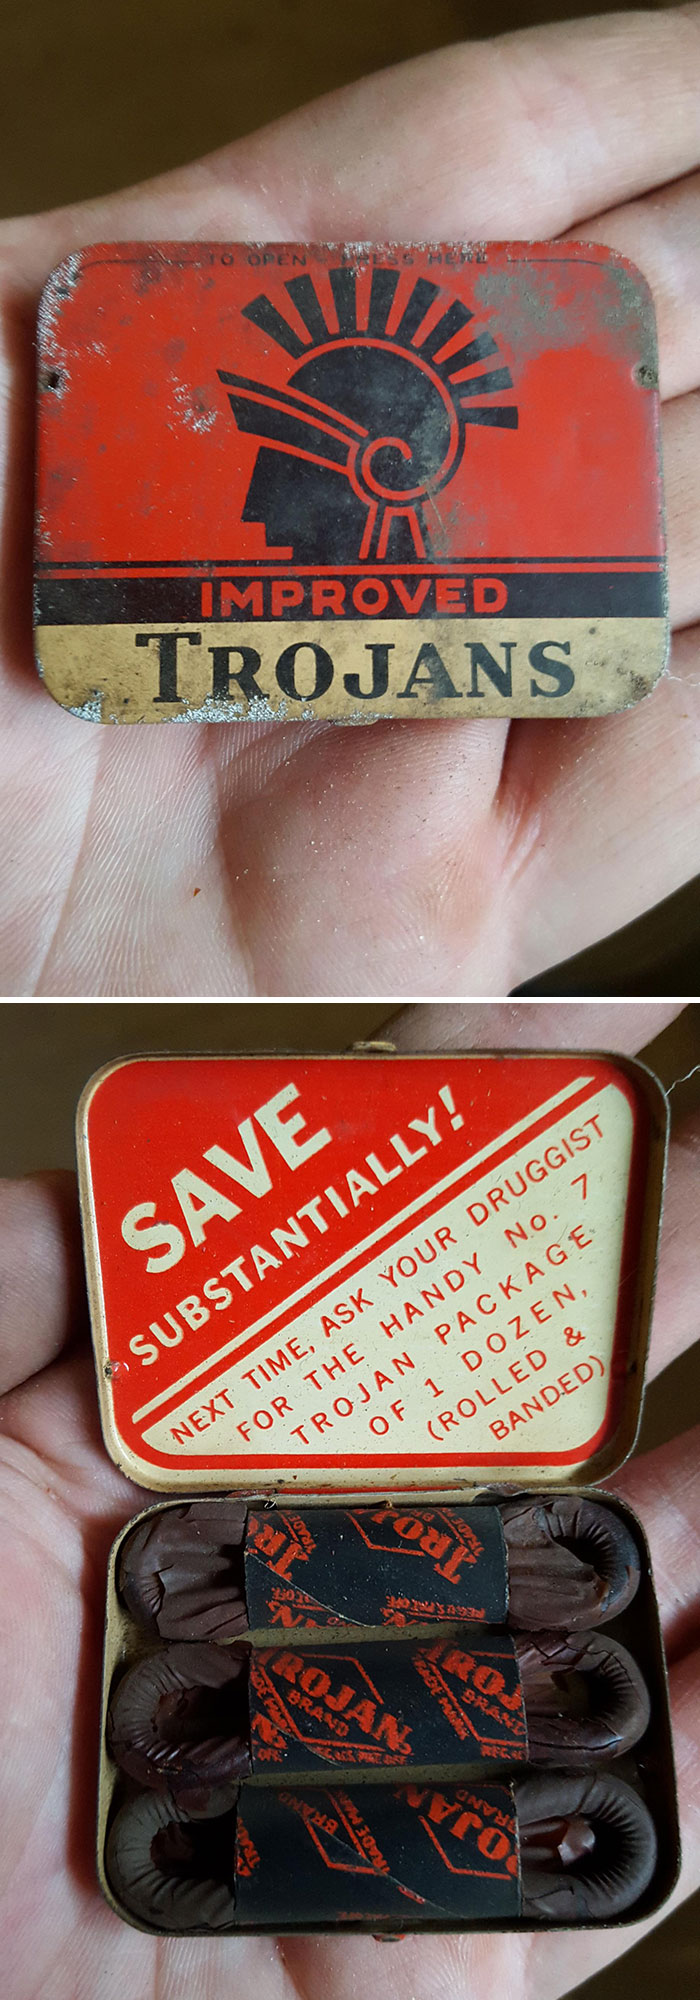 Condones de hace 60 años encontrados en mi sótano